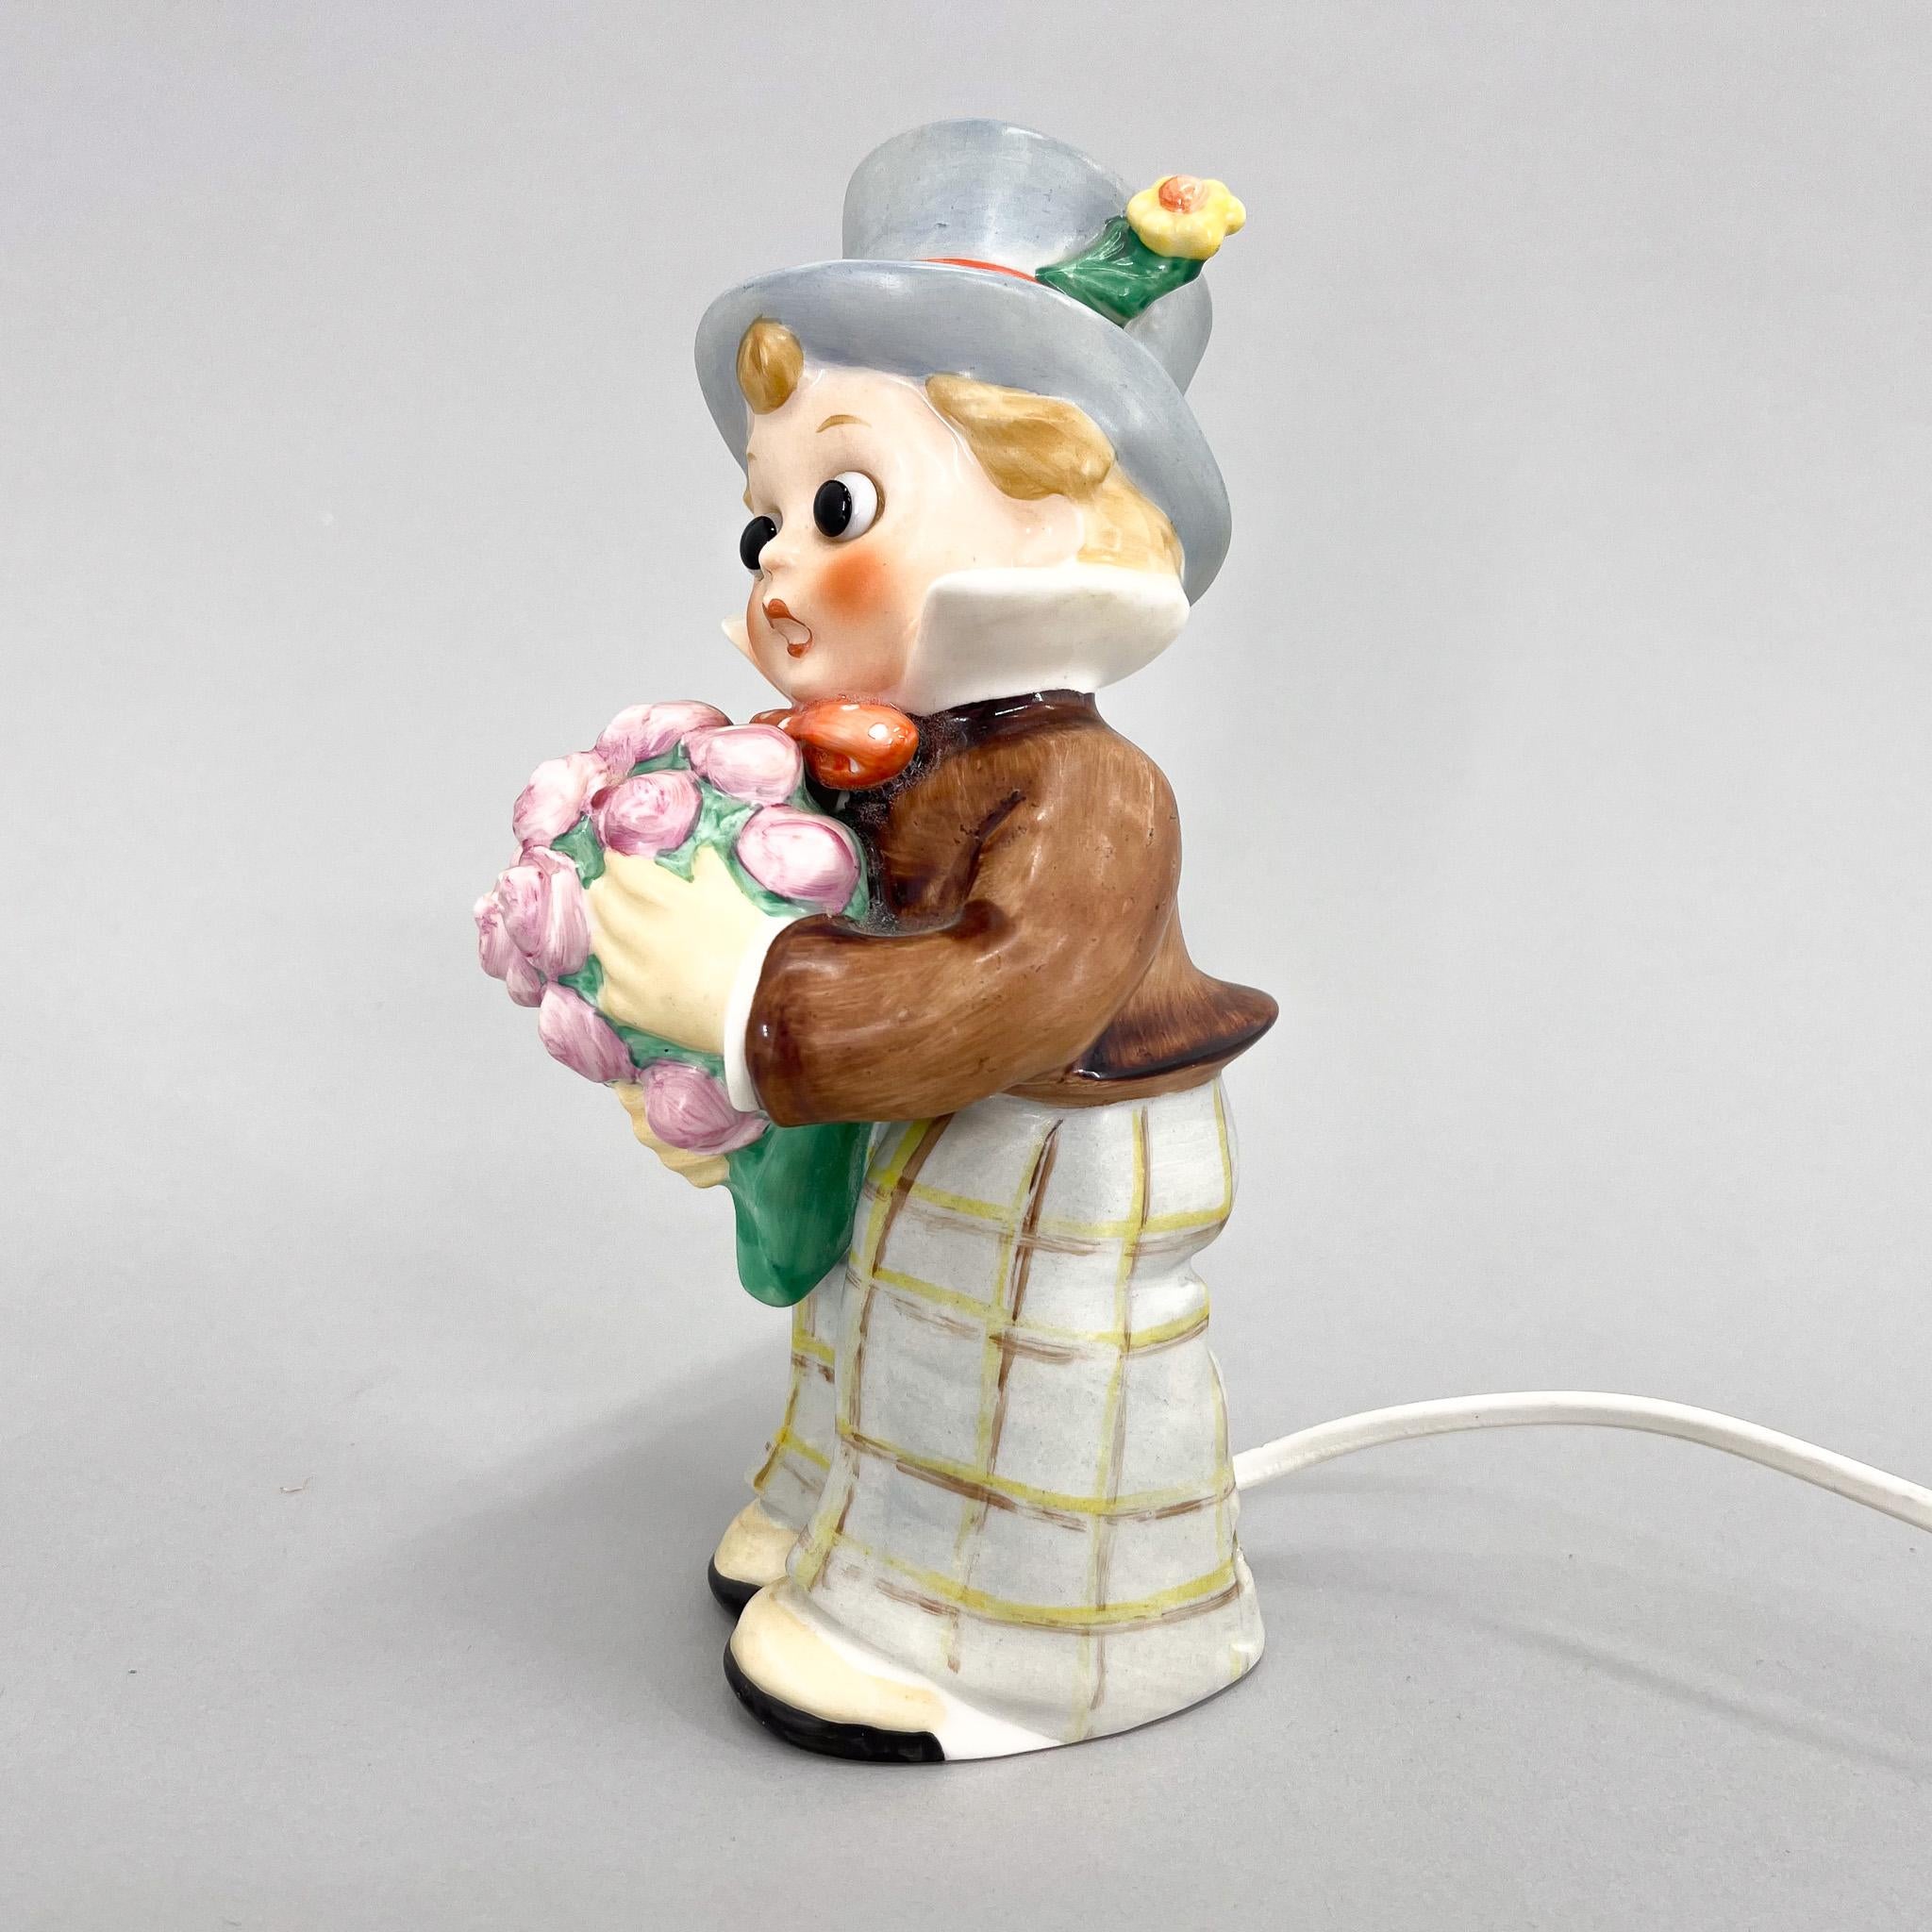 Porzellanfigur eines kleinen Jungen mit Blumen als Lampe von Goebel (markiert), hergestellt in den 1960er Jahren in Deutschland.